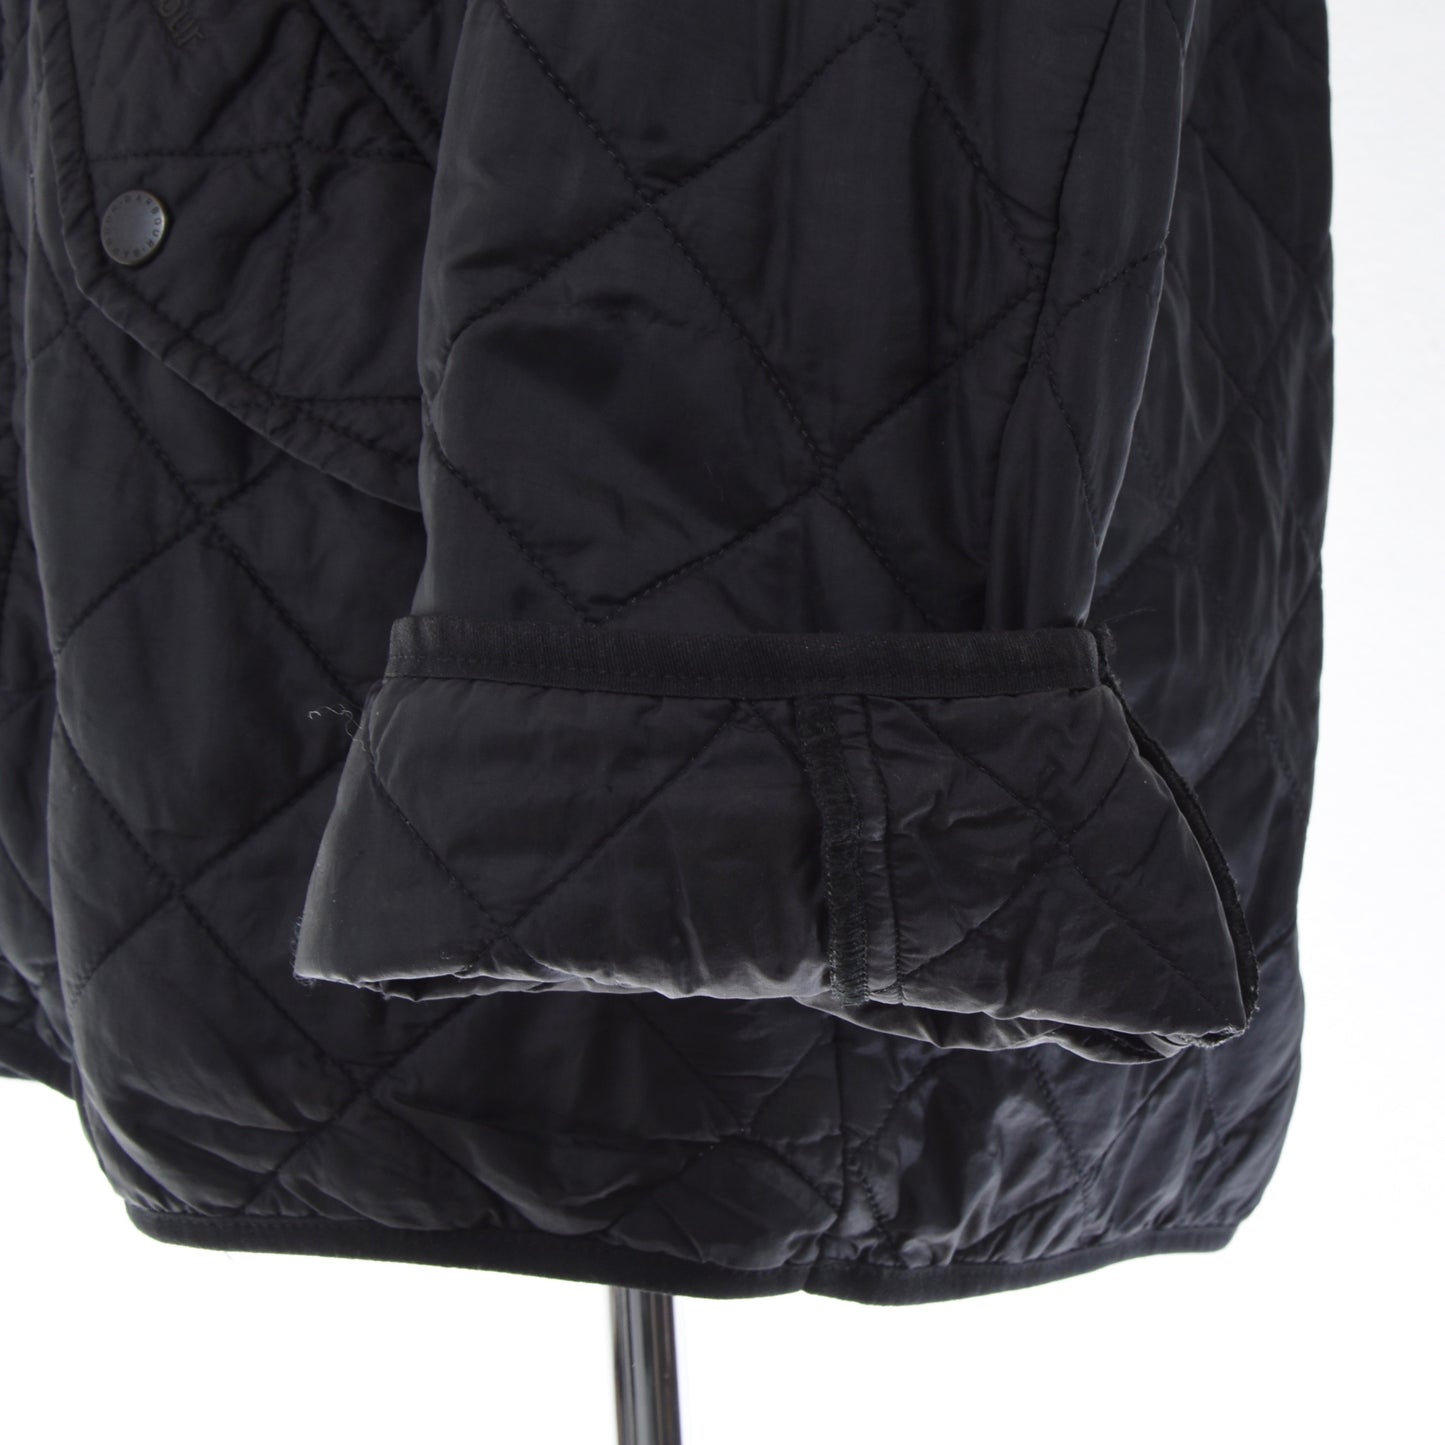 Barbour Richmond Sportsquilt Quilted Jacket Size L - Black